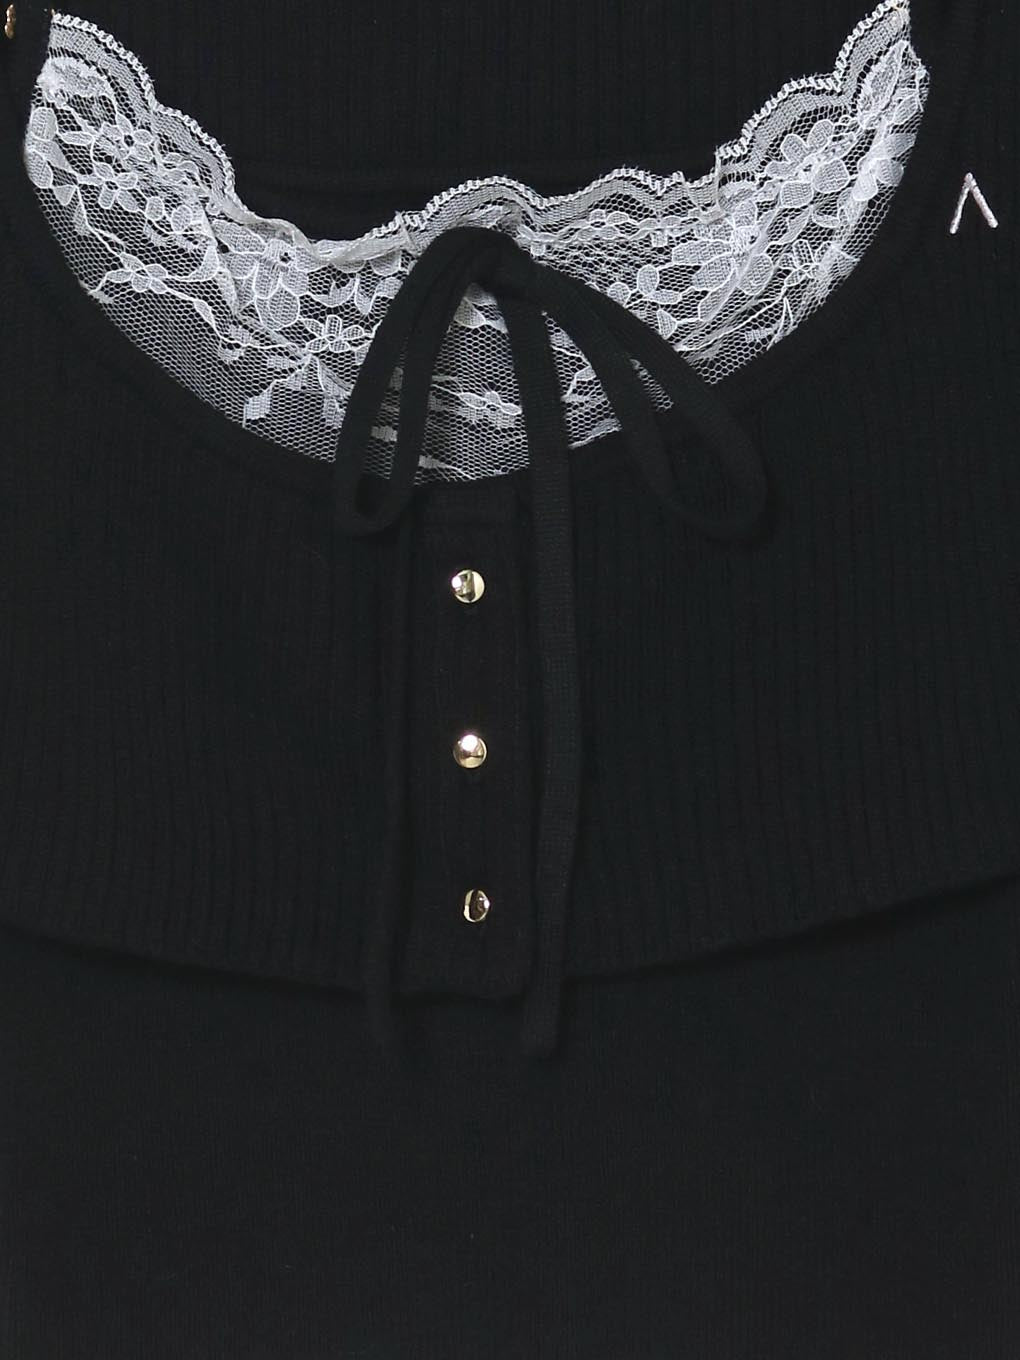 【新品】andmary Brenda lace knit set blackタグ付き新品未開封品です